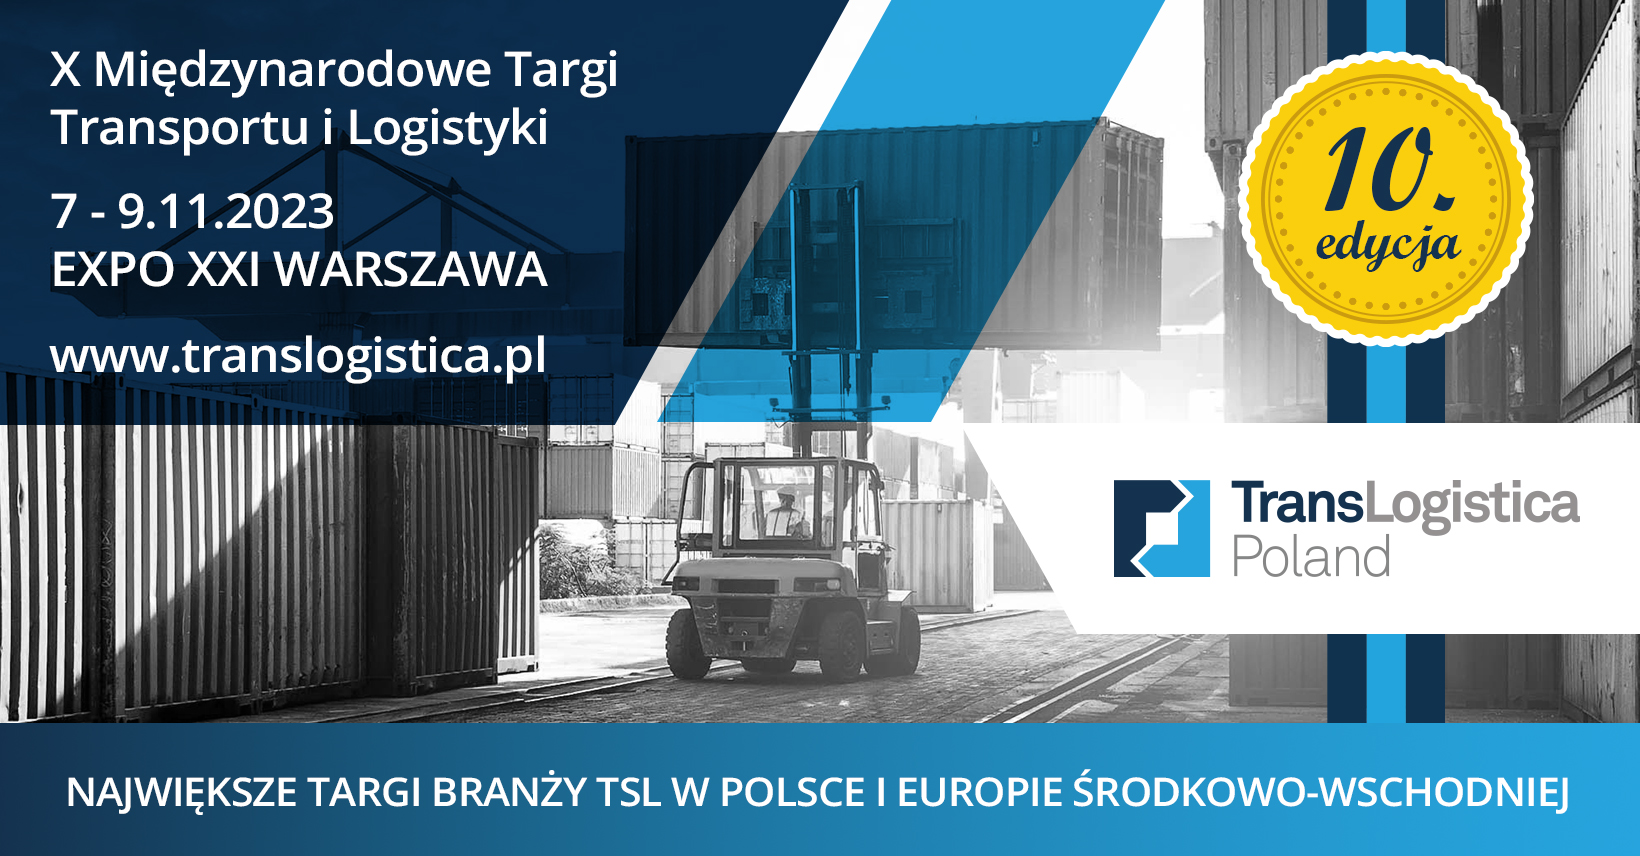 Święto branży TSL podczas X edycji Międzynarodowych Targów Transportu i Logistyki – TransLogistica Poland